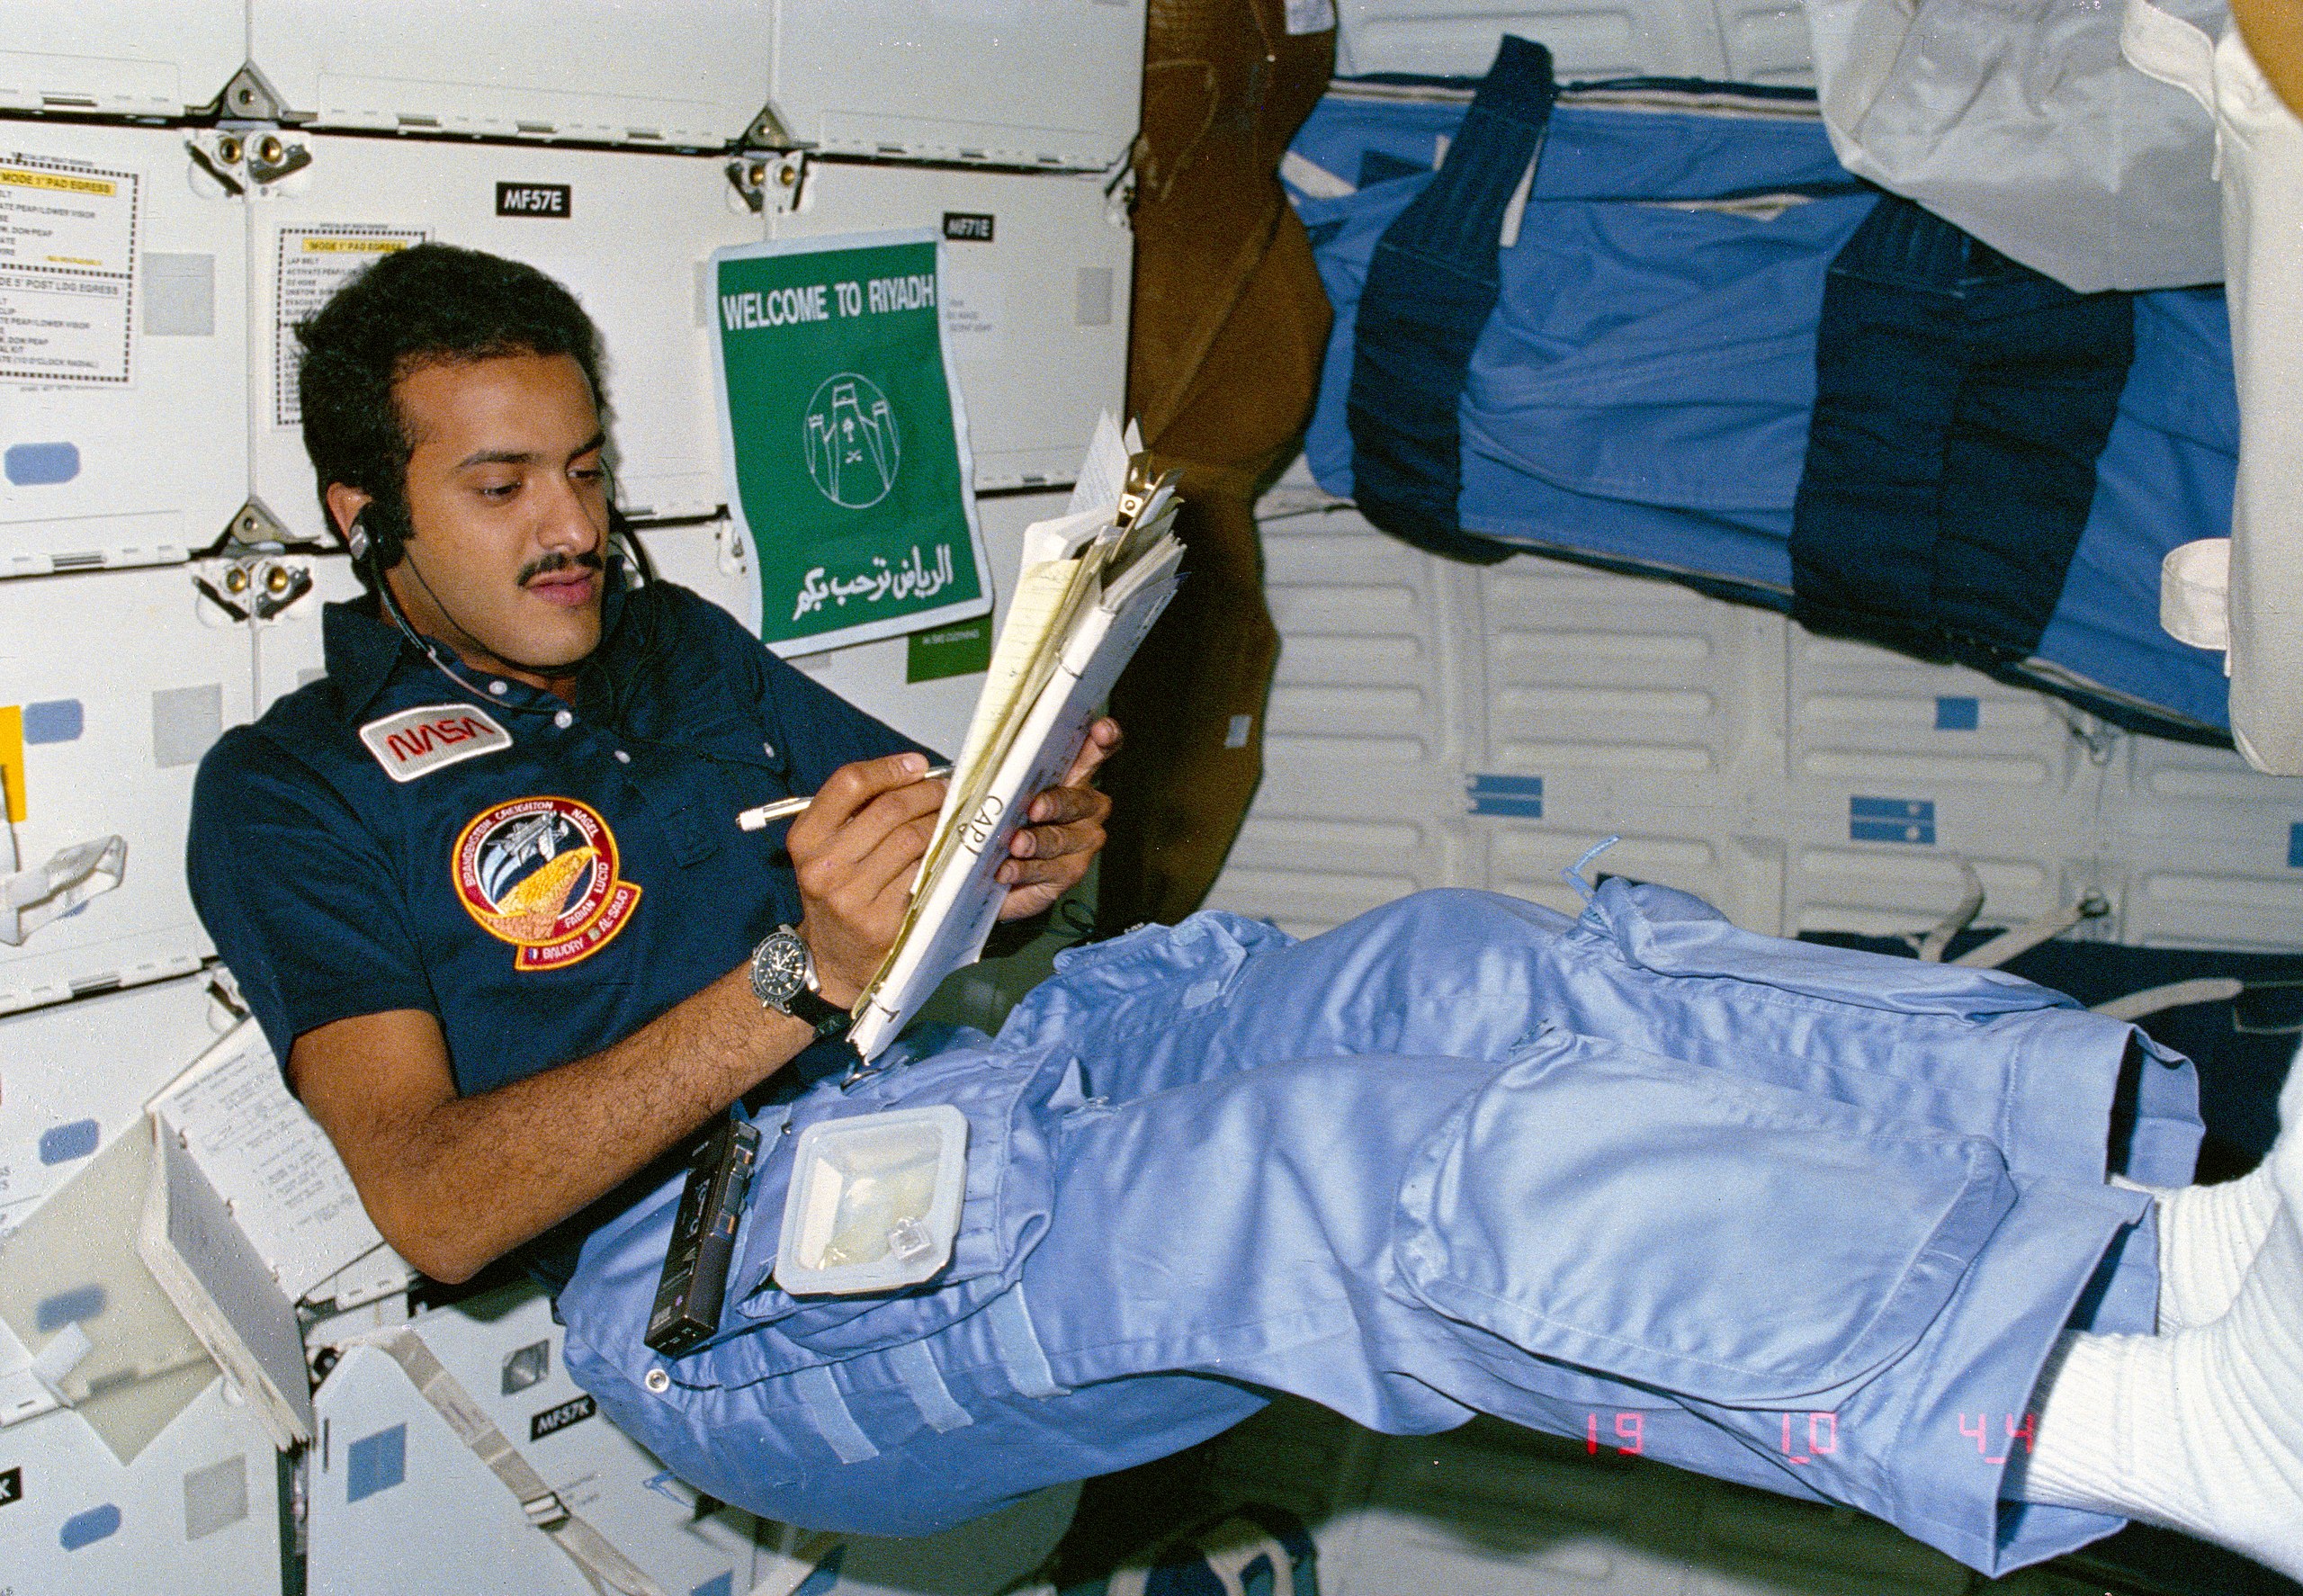 2560px-Sultan_bin_Salman_bin_Abdulaziz_Al_Saud_logging_notes_STS-51-G.jpg